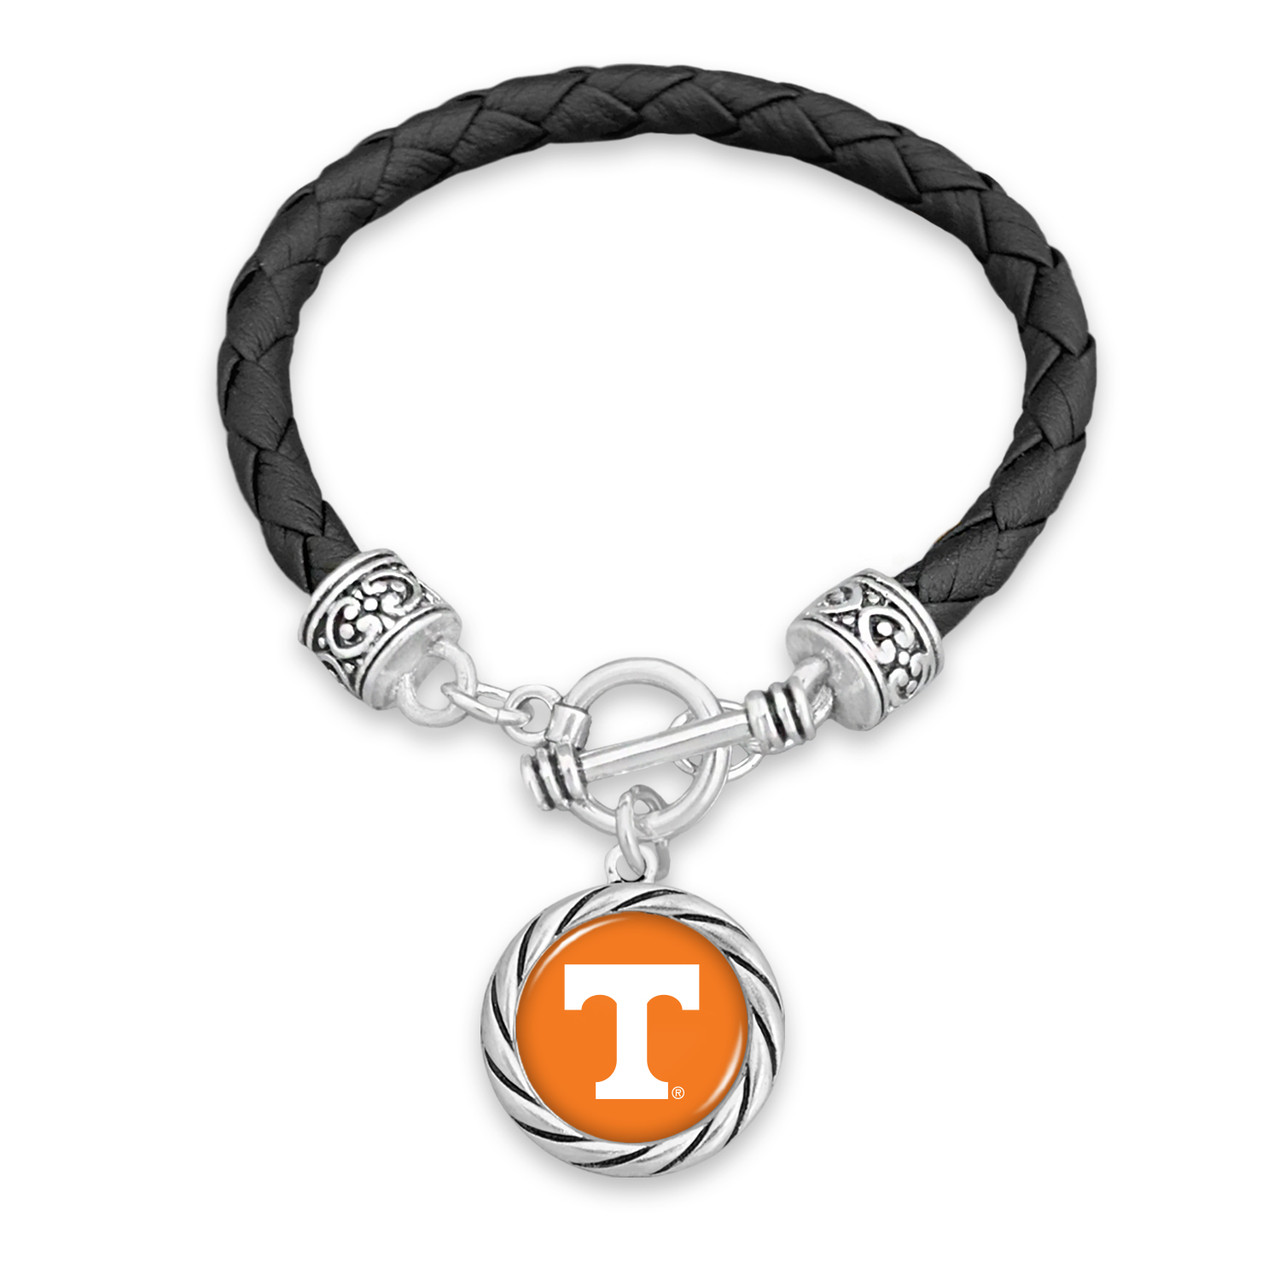 Tennessee Volunteers Bracelet- Black Leather Toggle